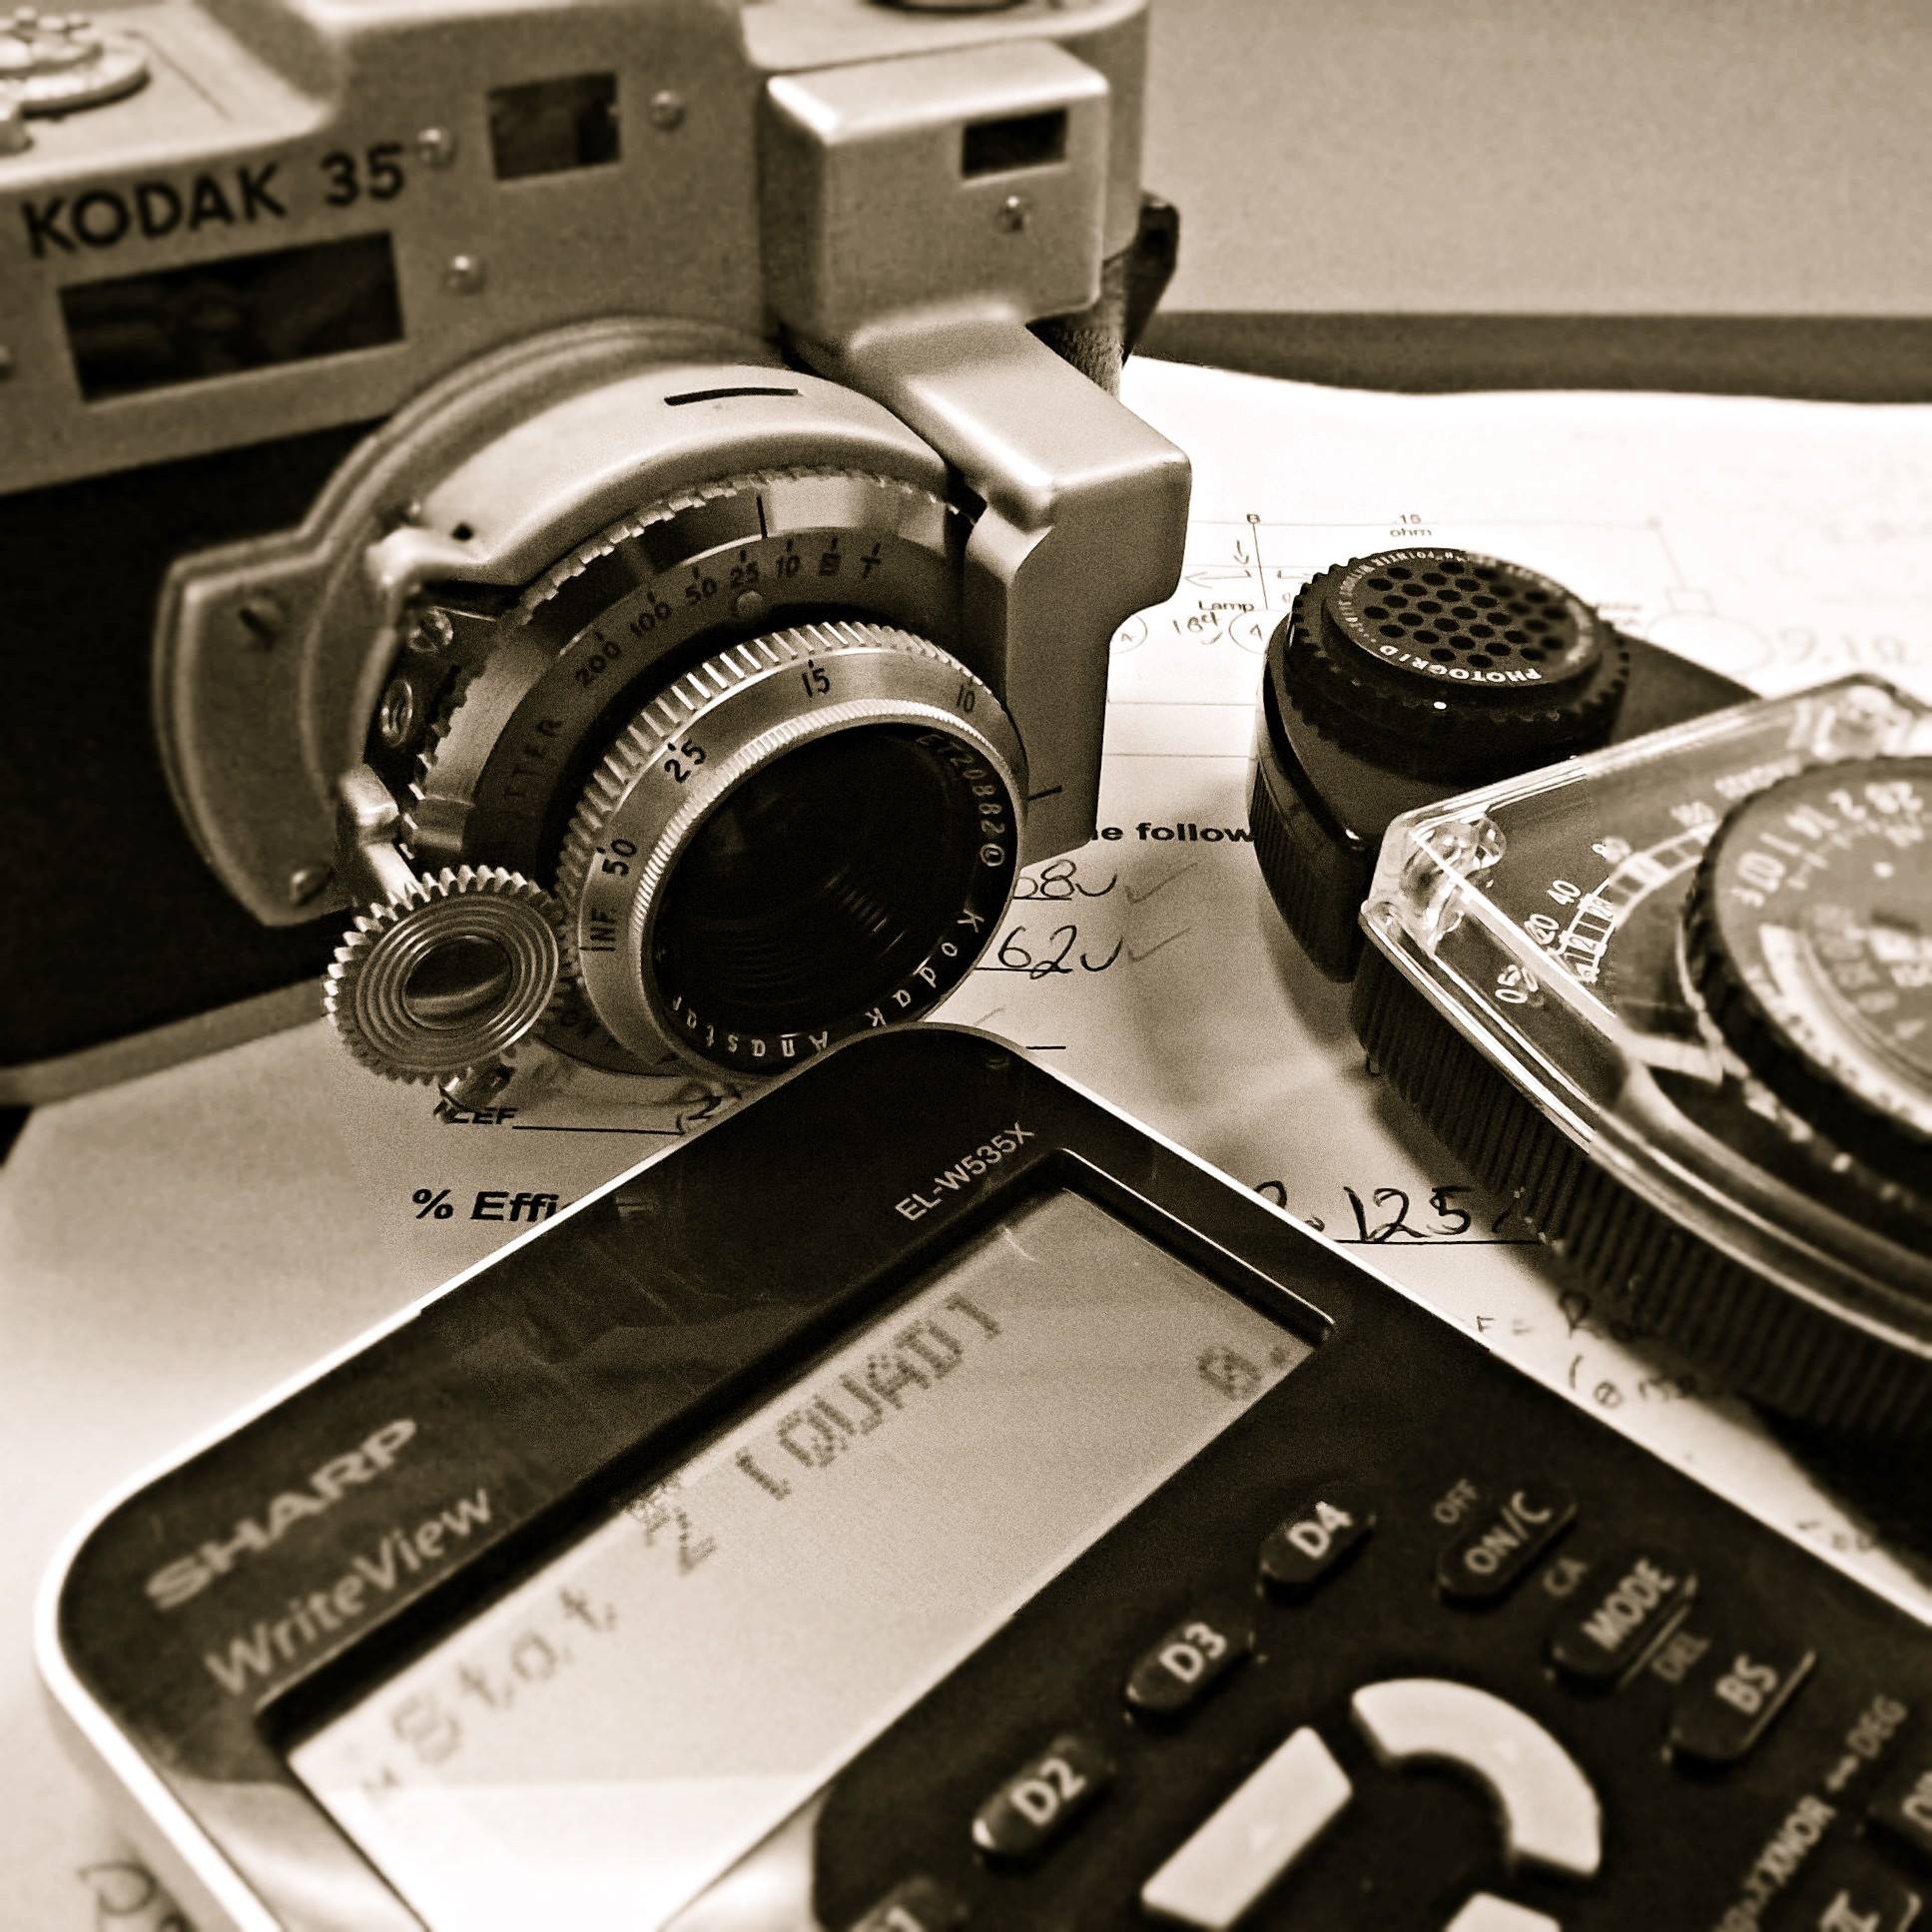 The Kodak 35RF